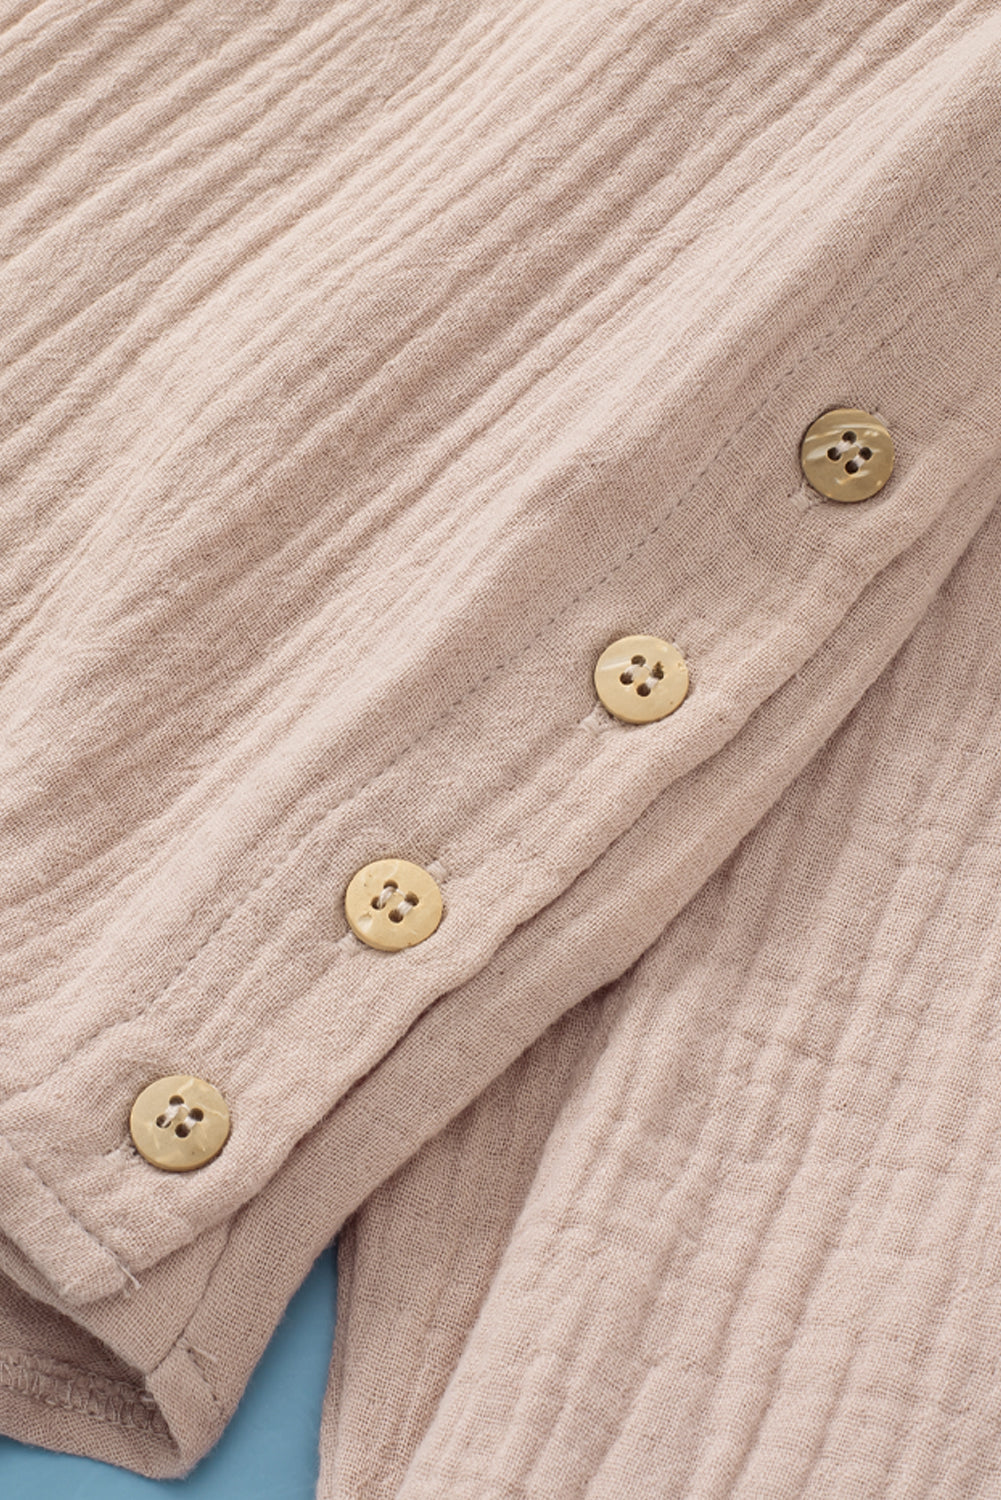 Camicia abbottonata con colletto rovesciato increspato color kaki con tasca